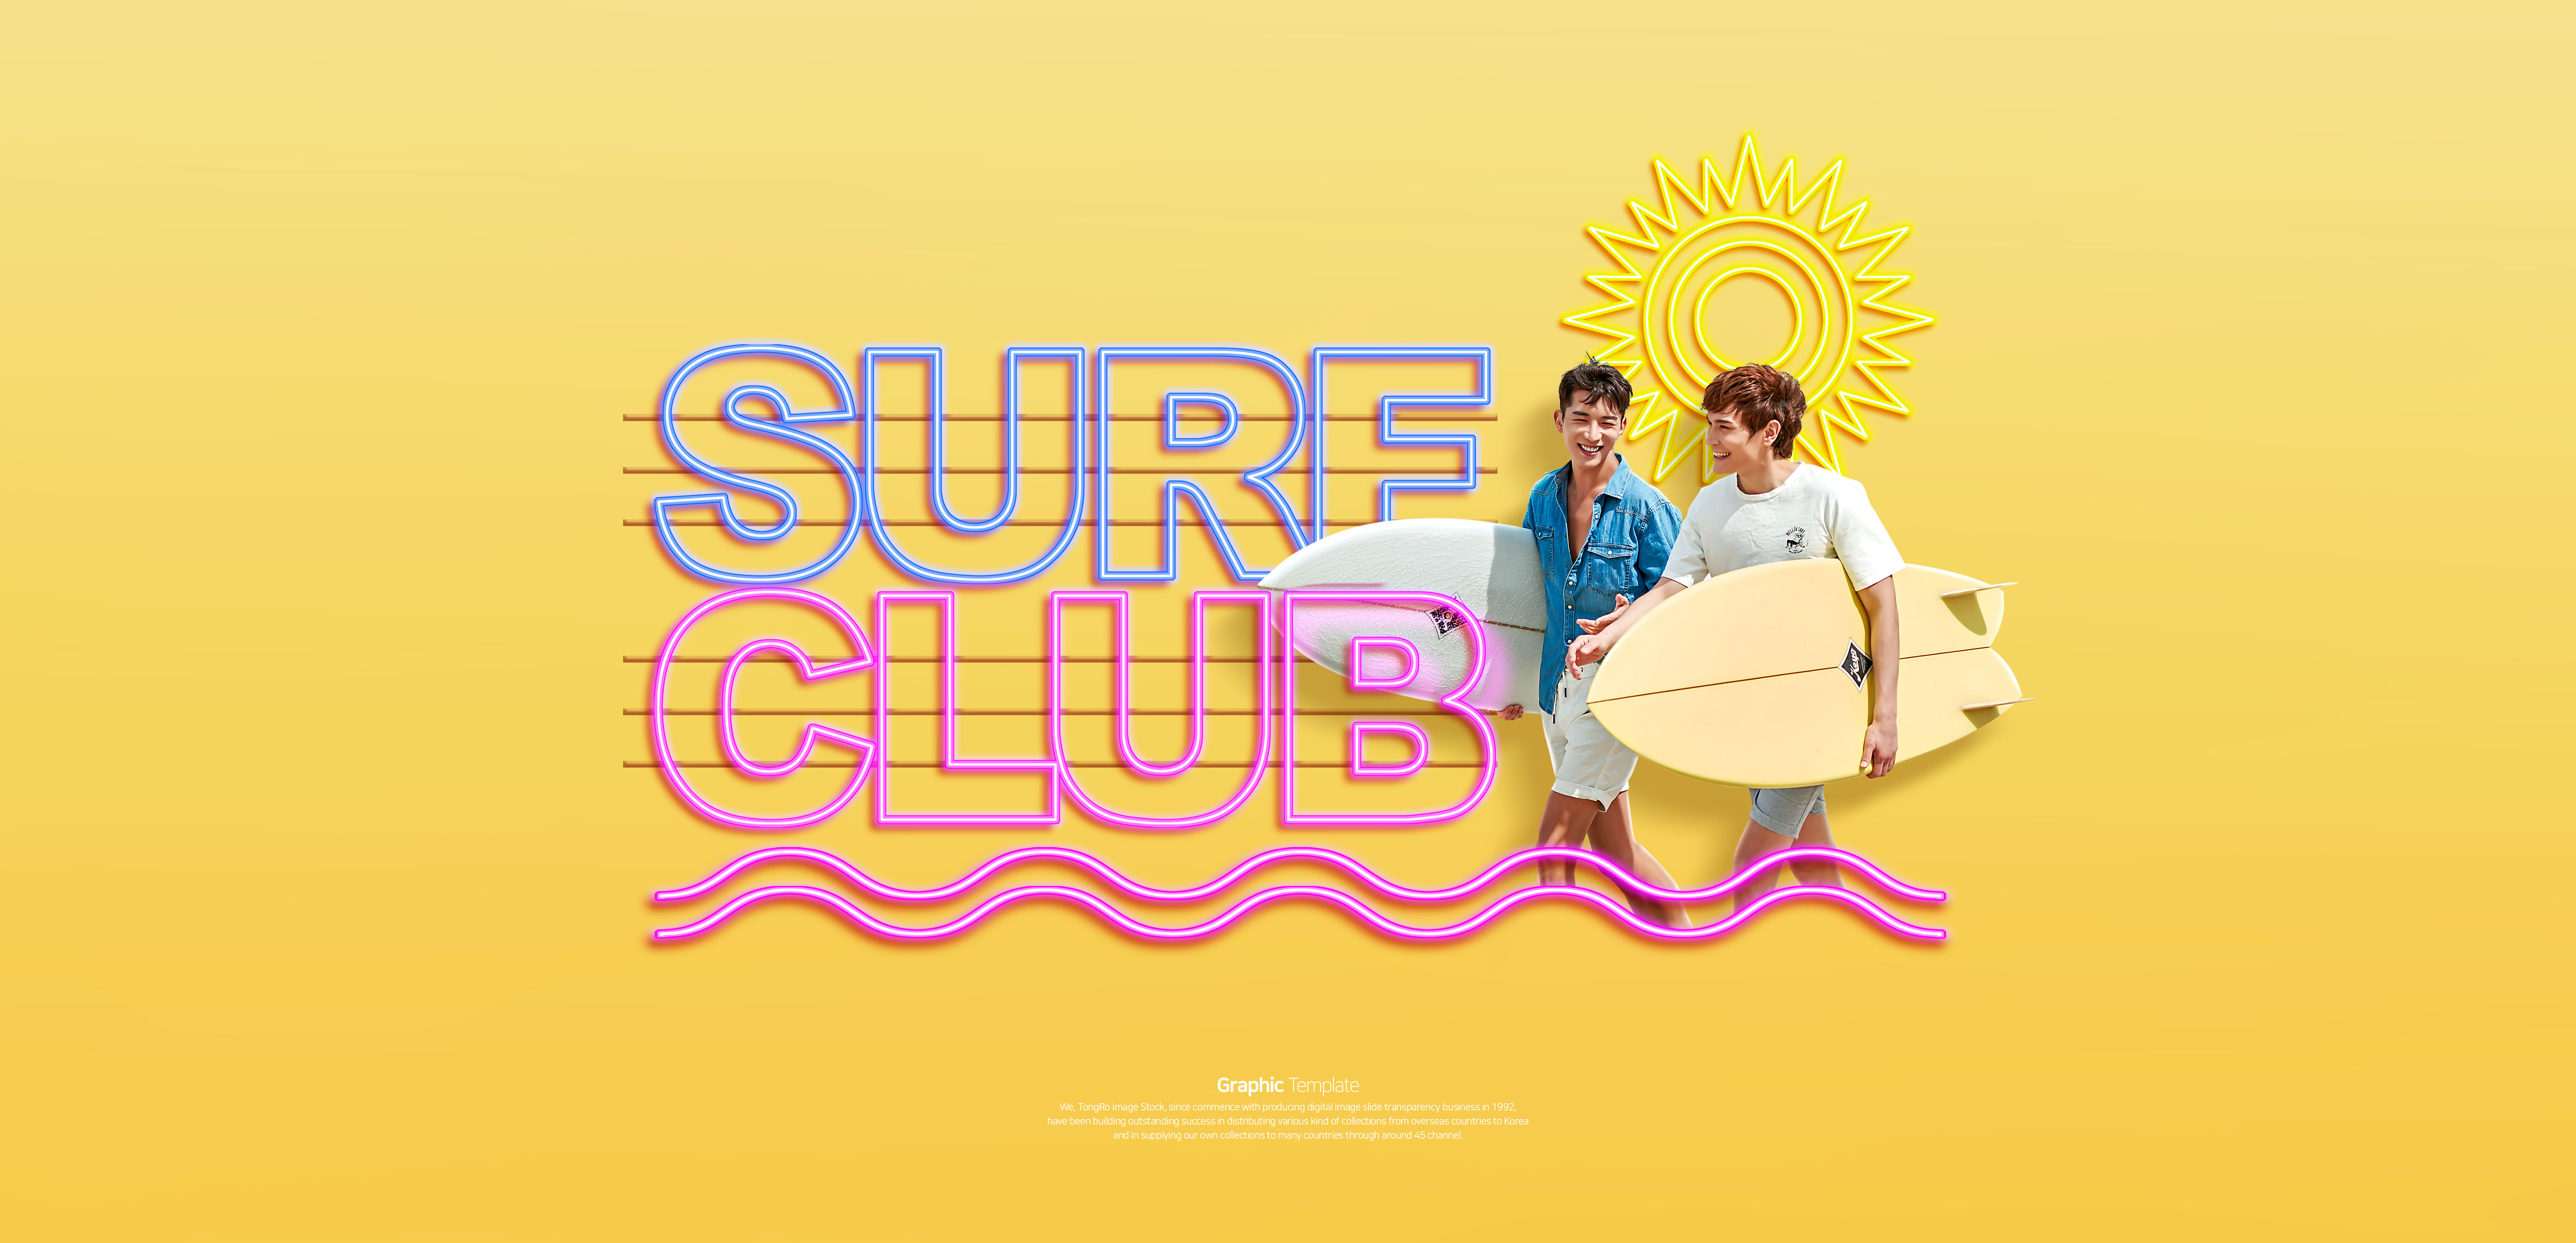 冲浪俱乐部活动宣传Banner大洋岛精选广告模板插图